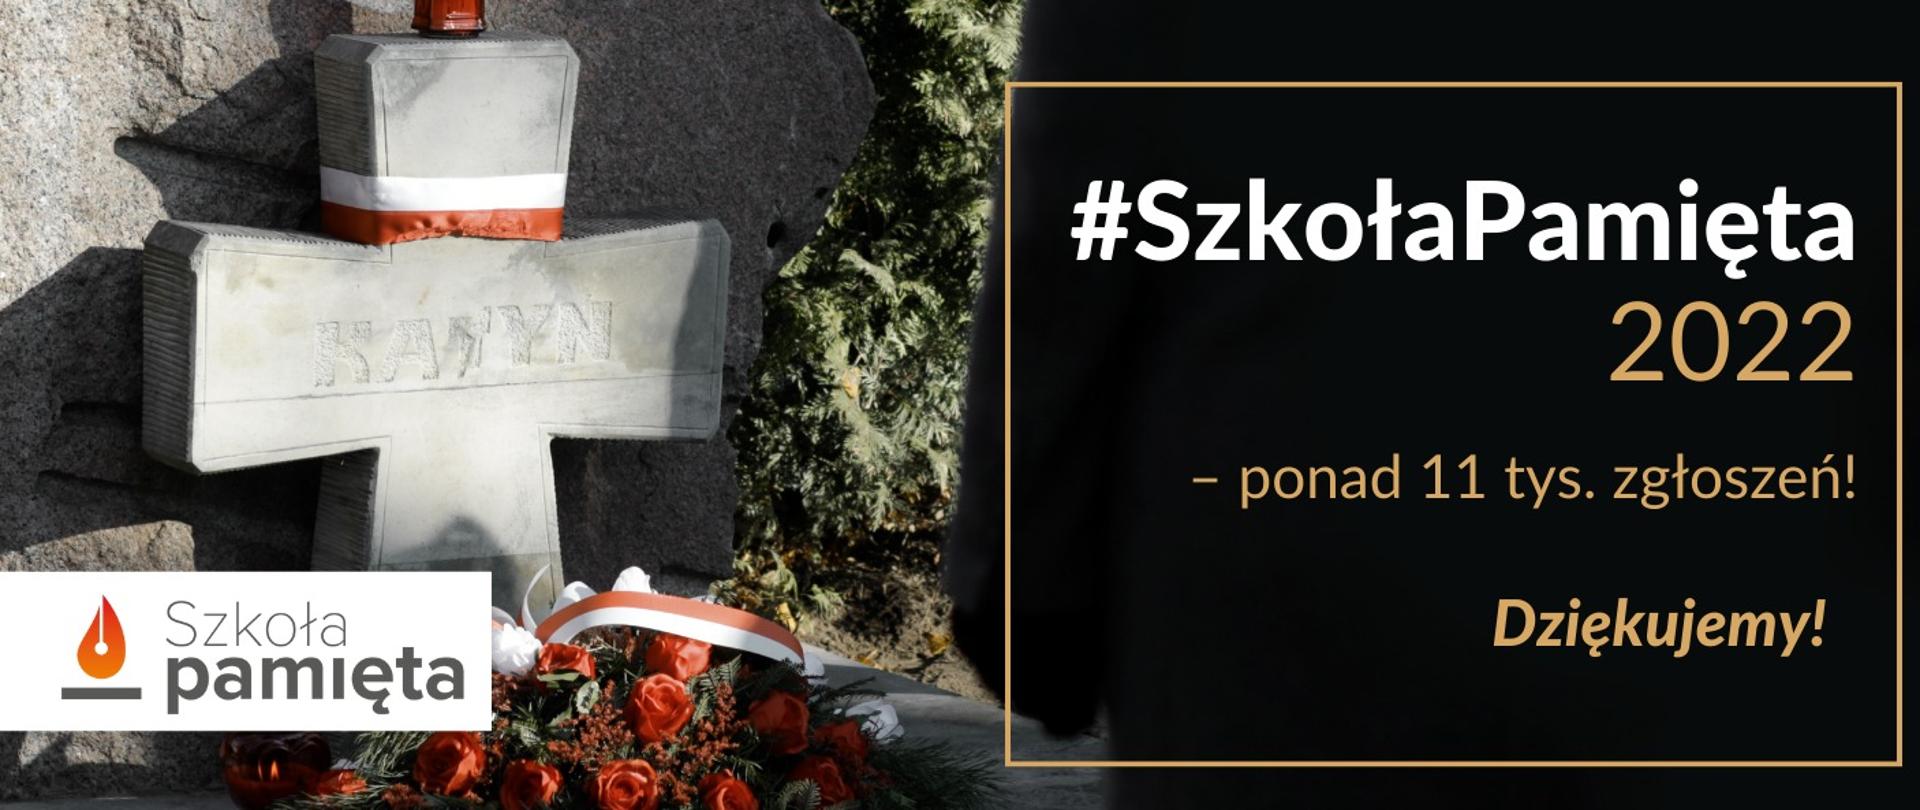 Zdjęcie krzyża owiniętego biało-czerwoną wstążką i napis Szkoła pamięta 2022 - ponad 11 tys. zgłoszeń.